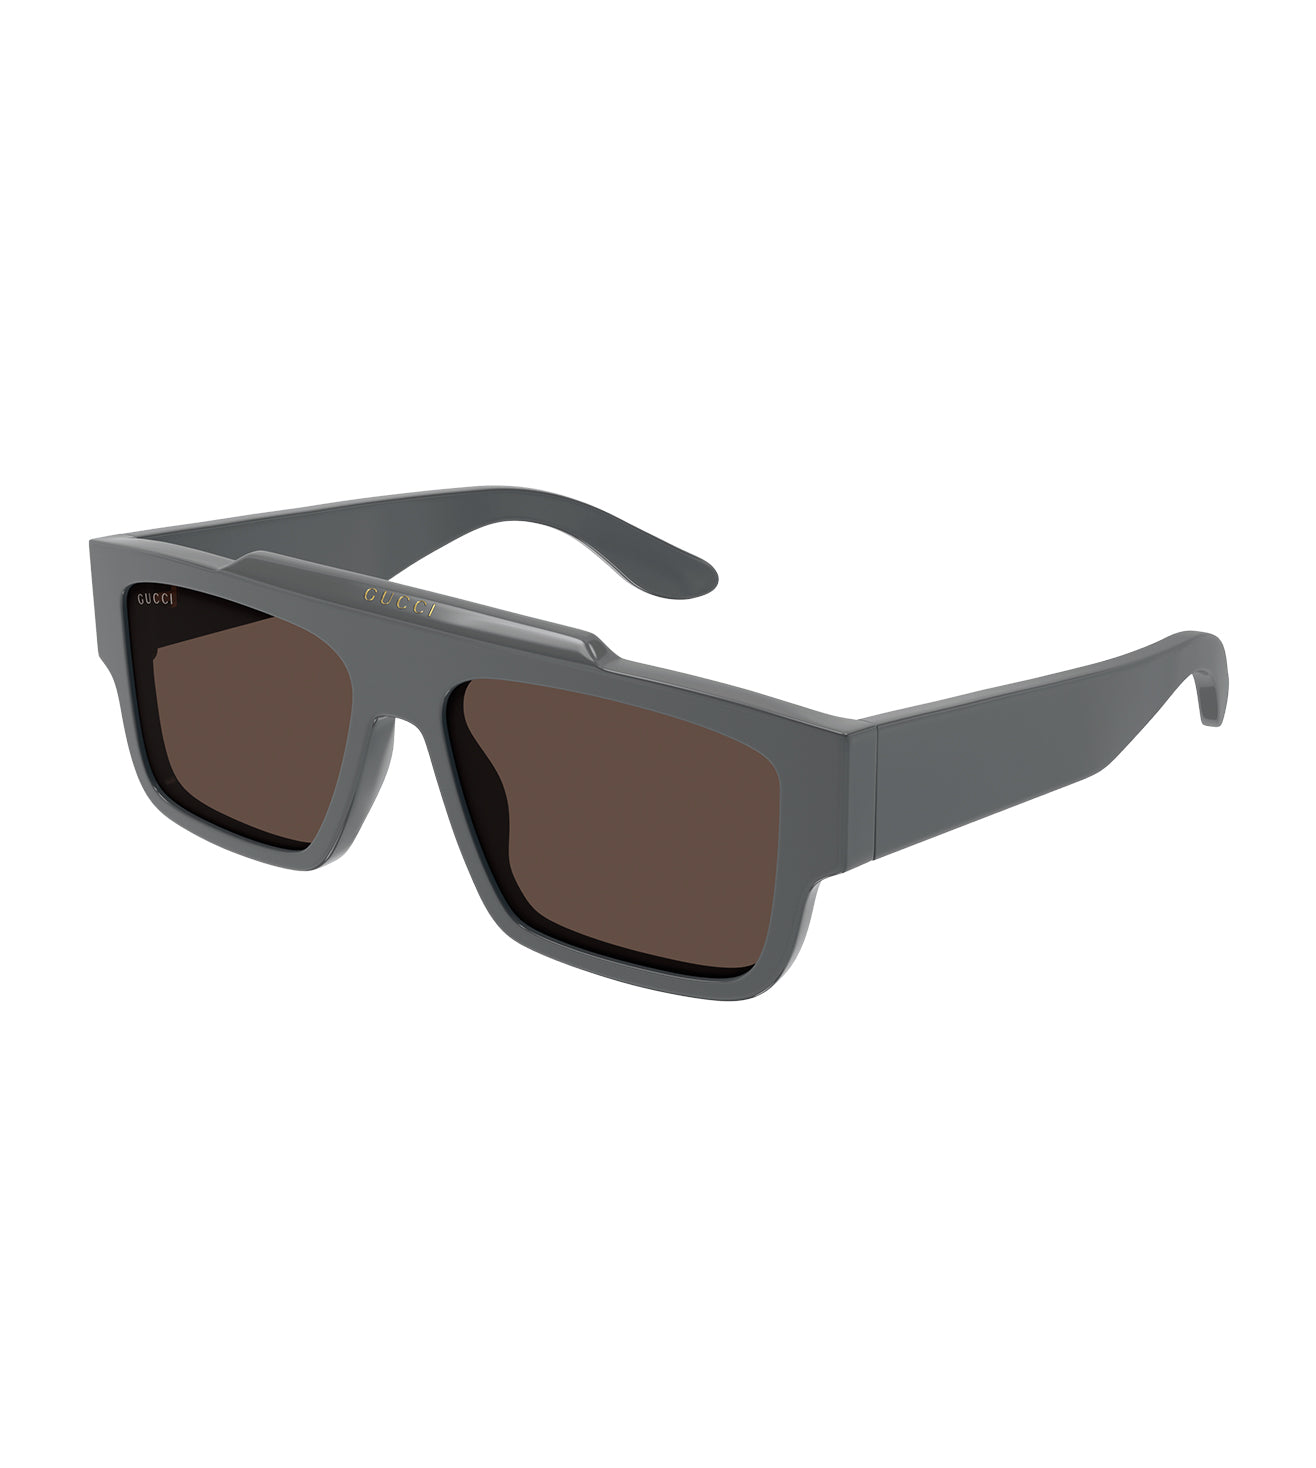 Gucci Men's Brown Square Sunglasses